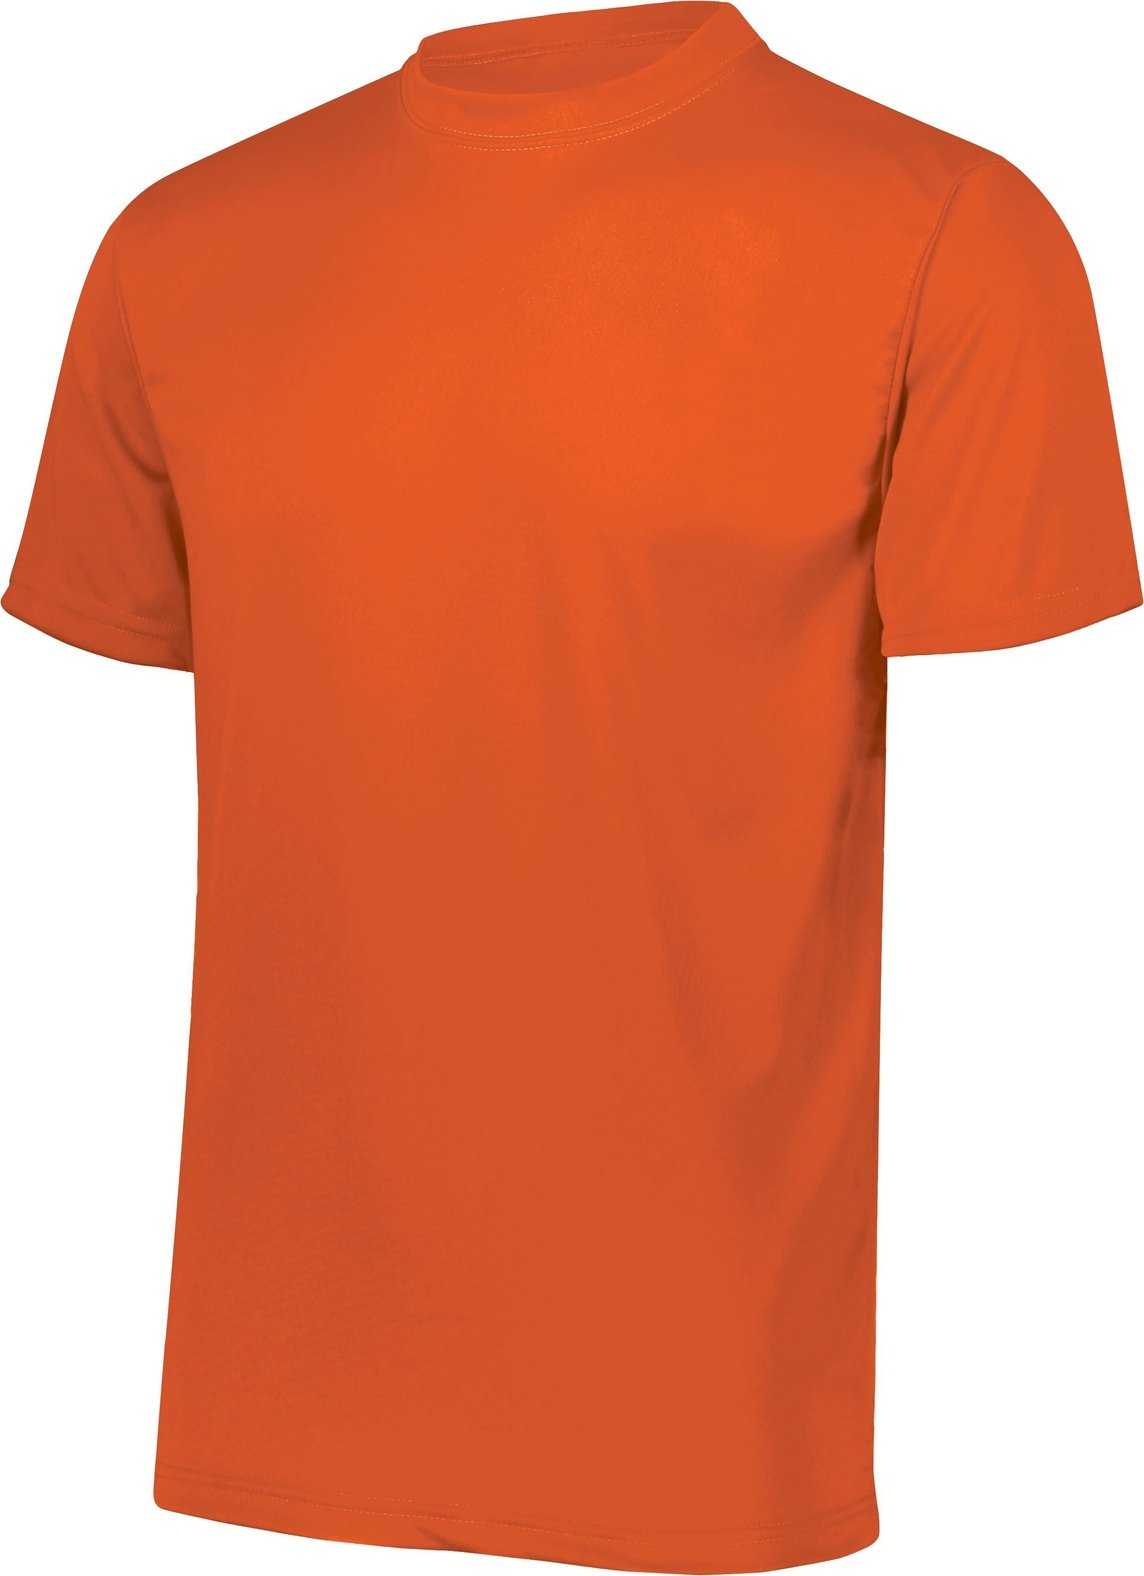 Augusta 791 NexGen Wicking T-Shirt - Youth - Orange - HIT a Double